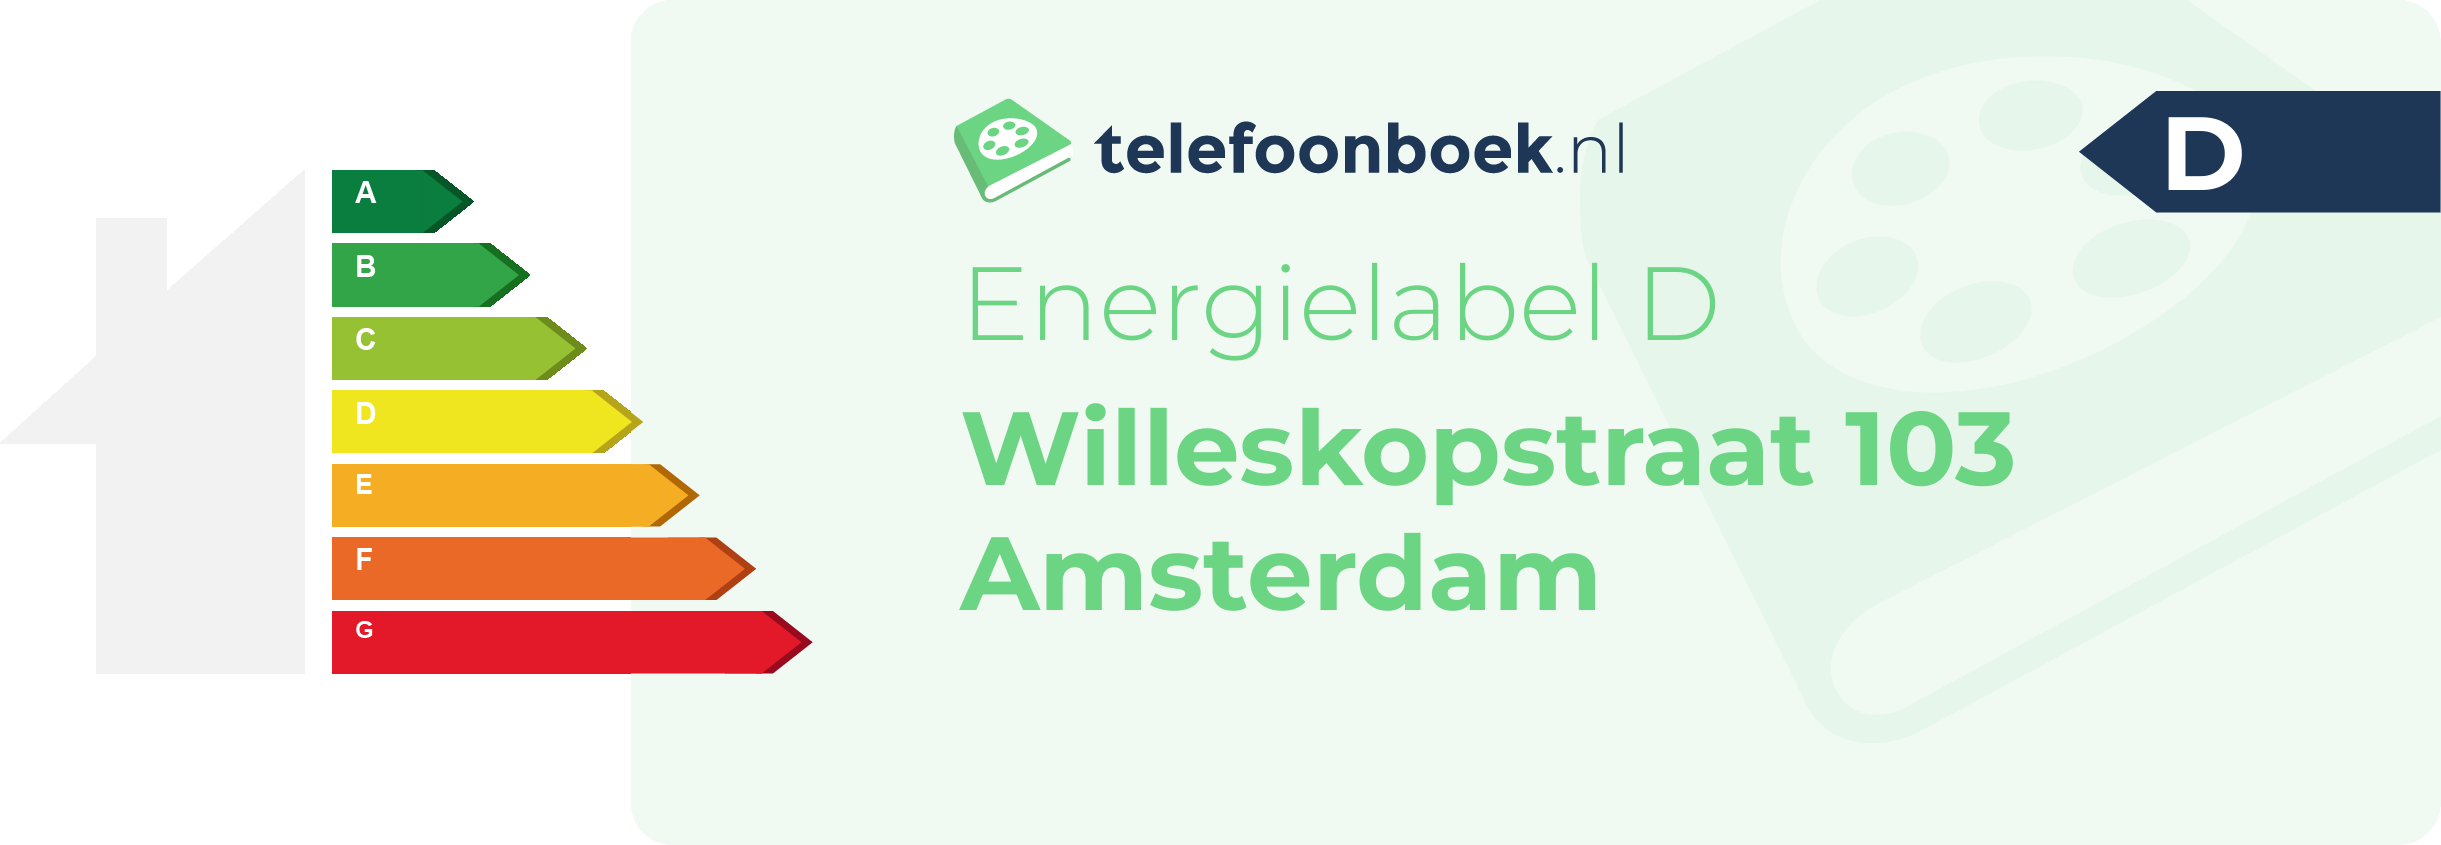 Energielabel Willeskopstraat 103 Amsterdam